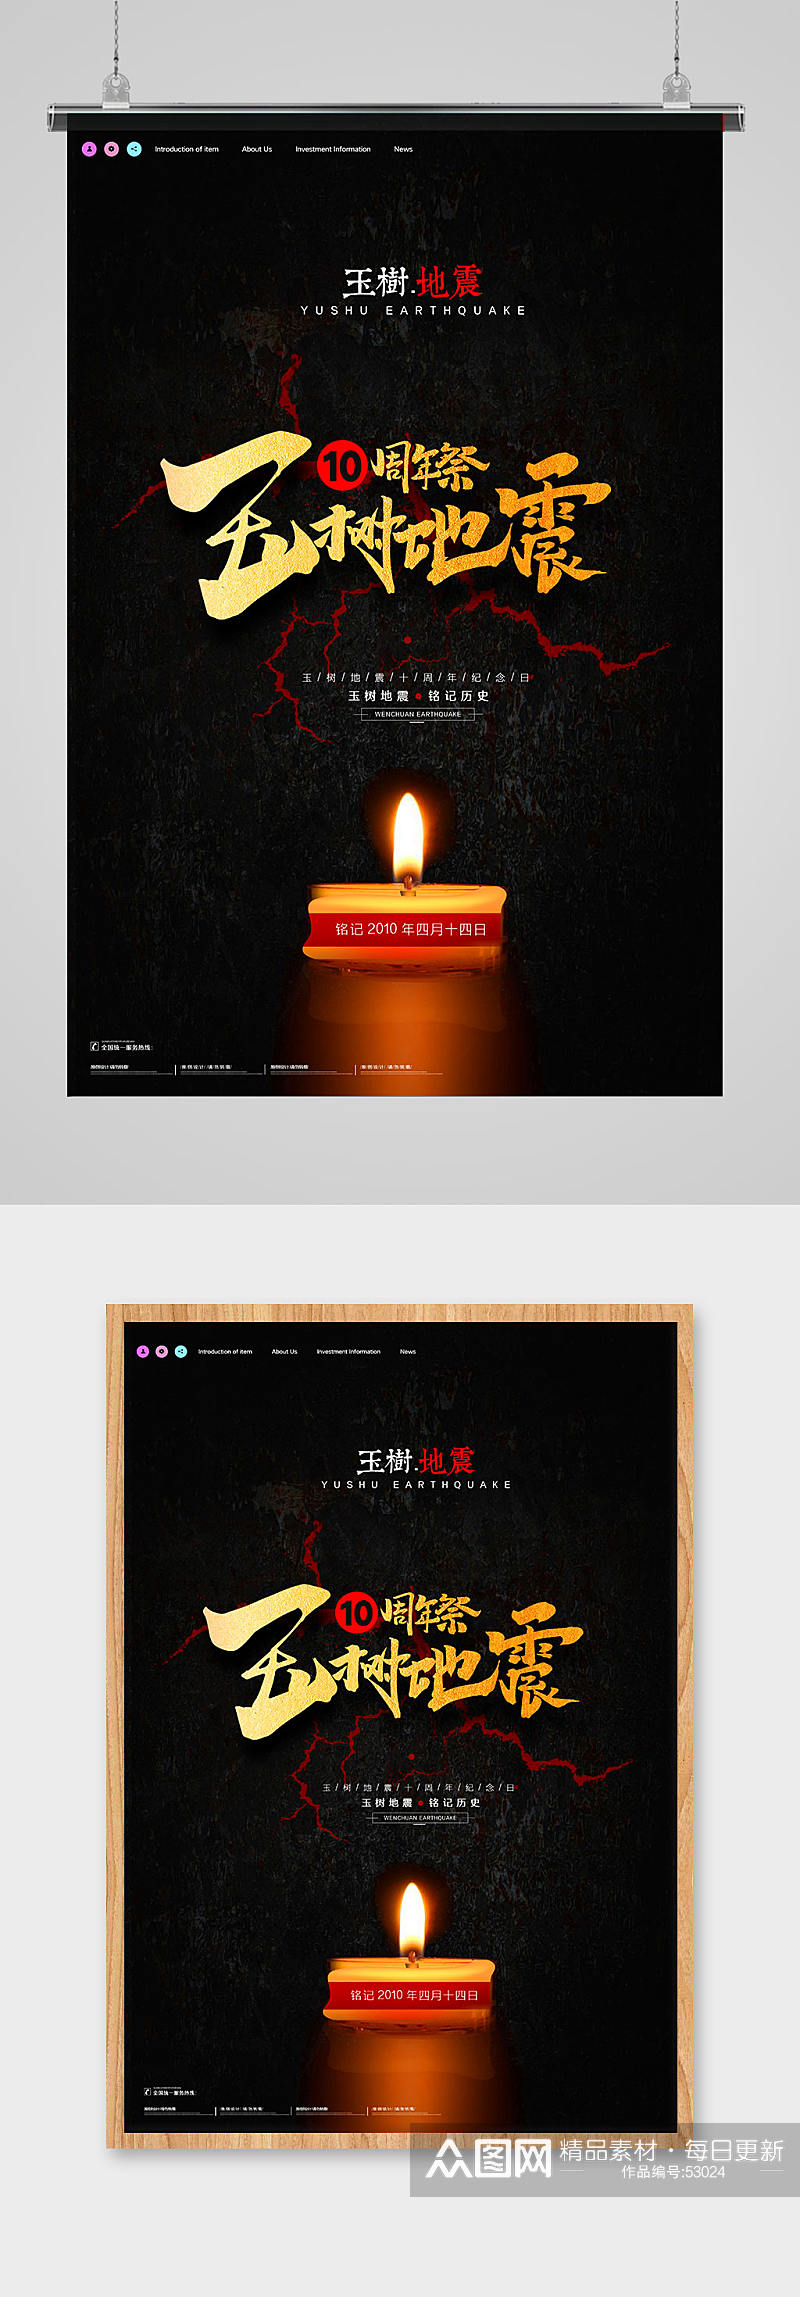 蜡烛祈福祈祷祭玉树地震10周年海报素材